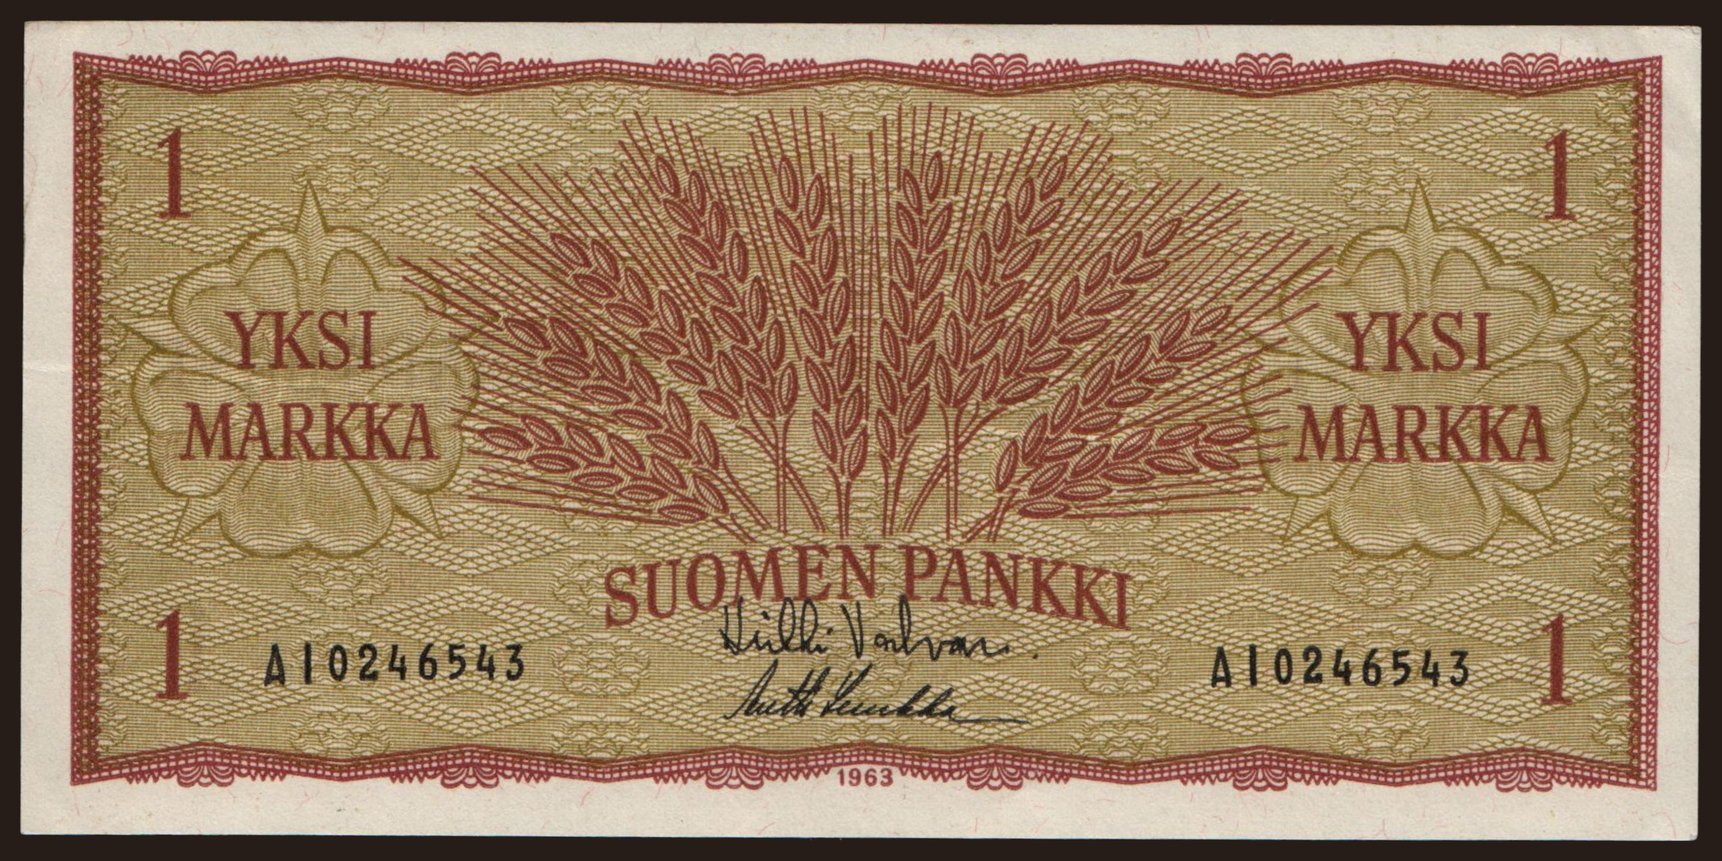 1 markka, 1963